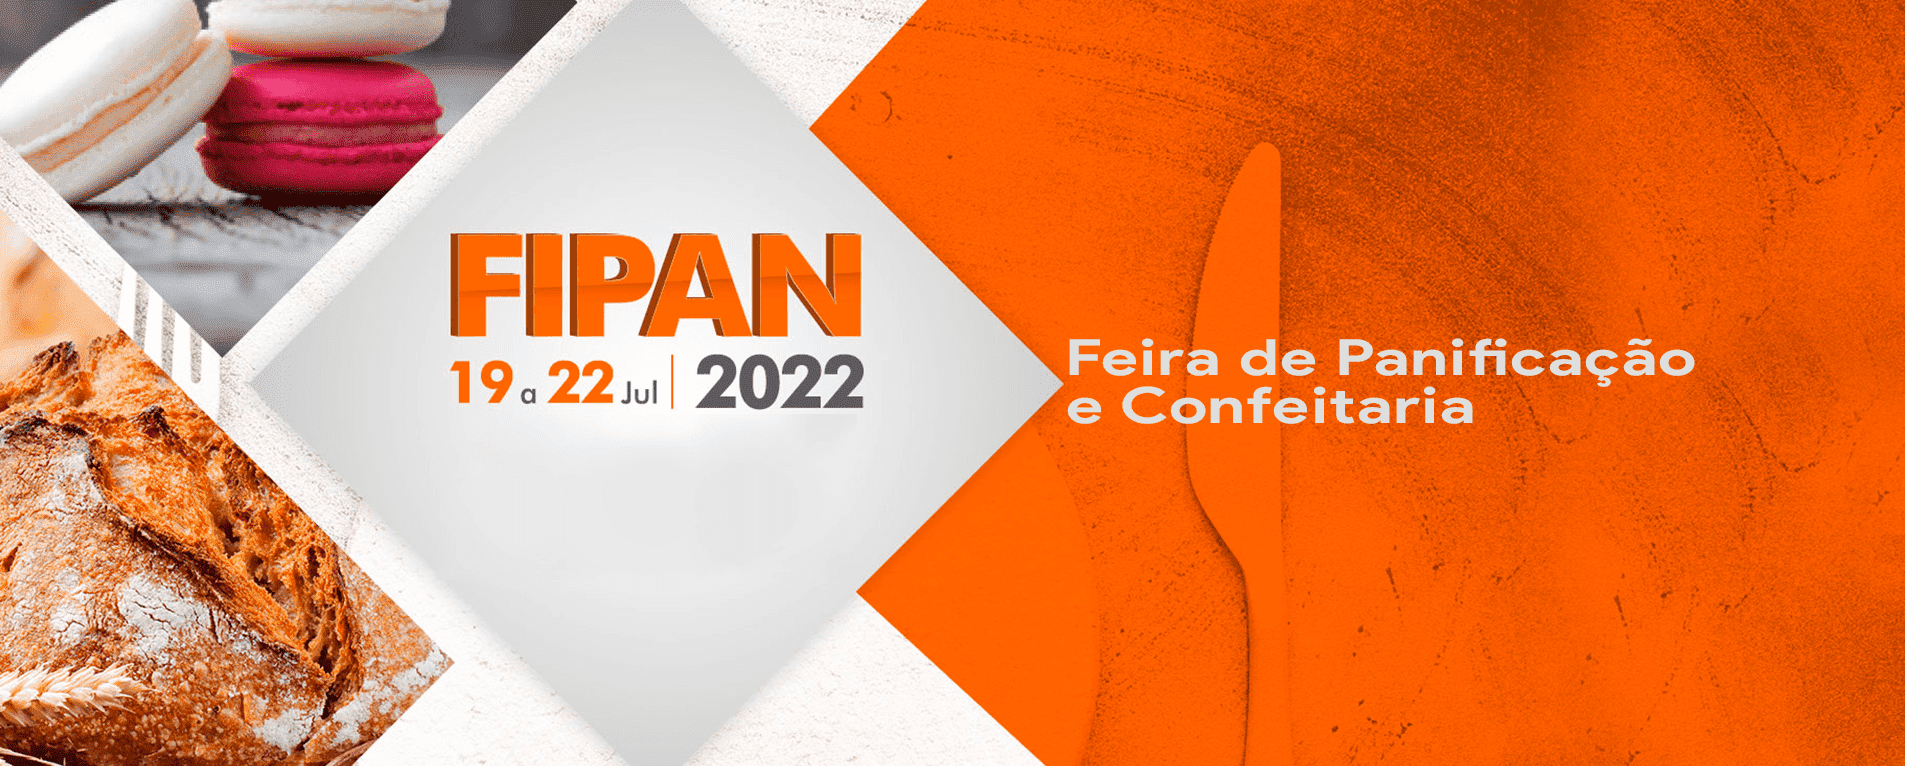 FIPAN 2022: Feira de Panificação e Confeitaria Será em Julho